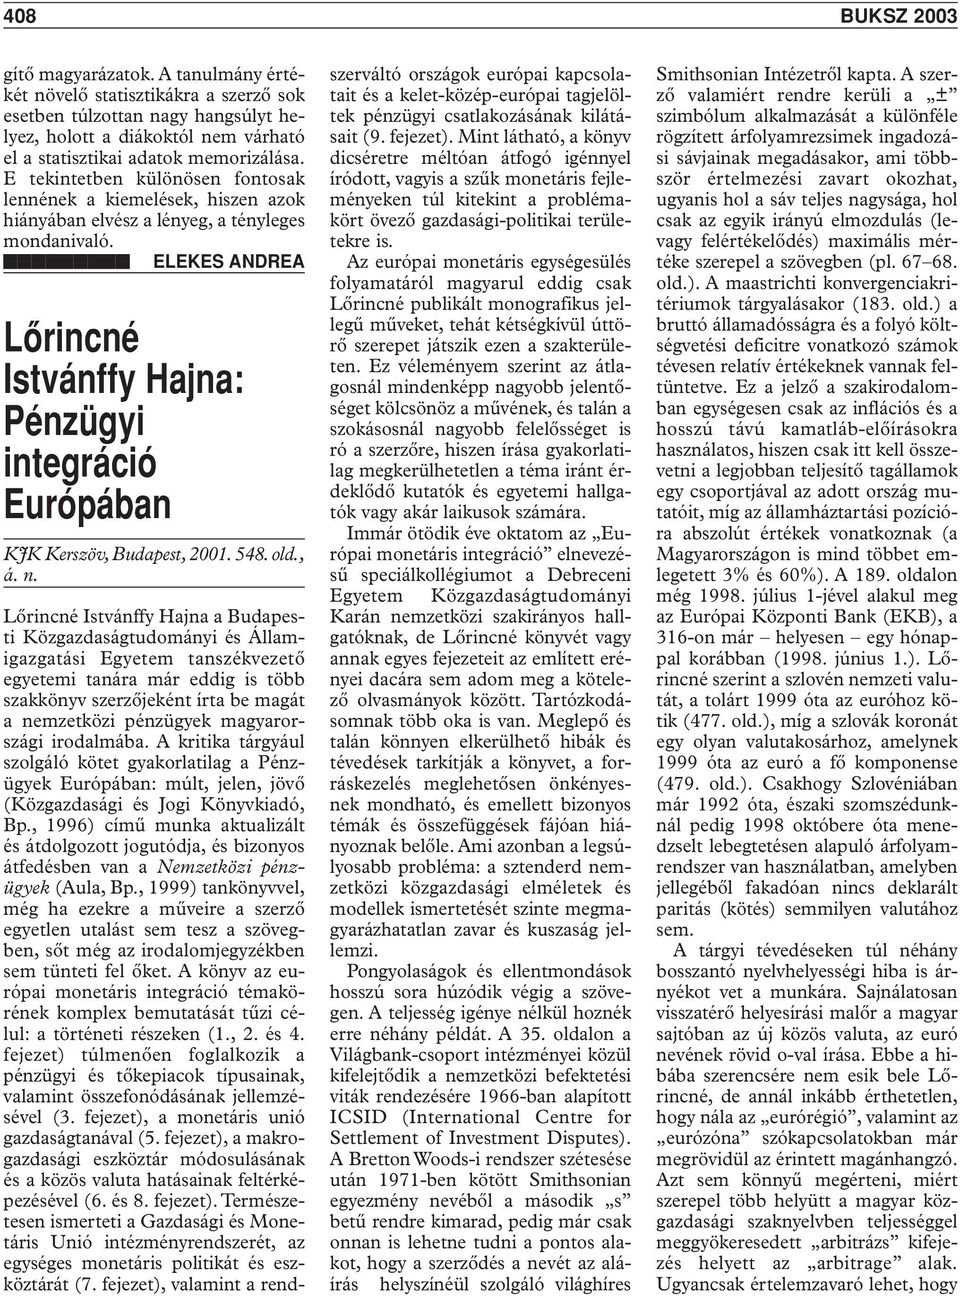 ELEKES ANDREA Lôrincné Istvánffy Hajna: Pénzügyi integráció Európában KJK Kerszöv, Budapest, 2001. 548. old., á. n.